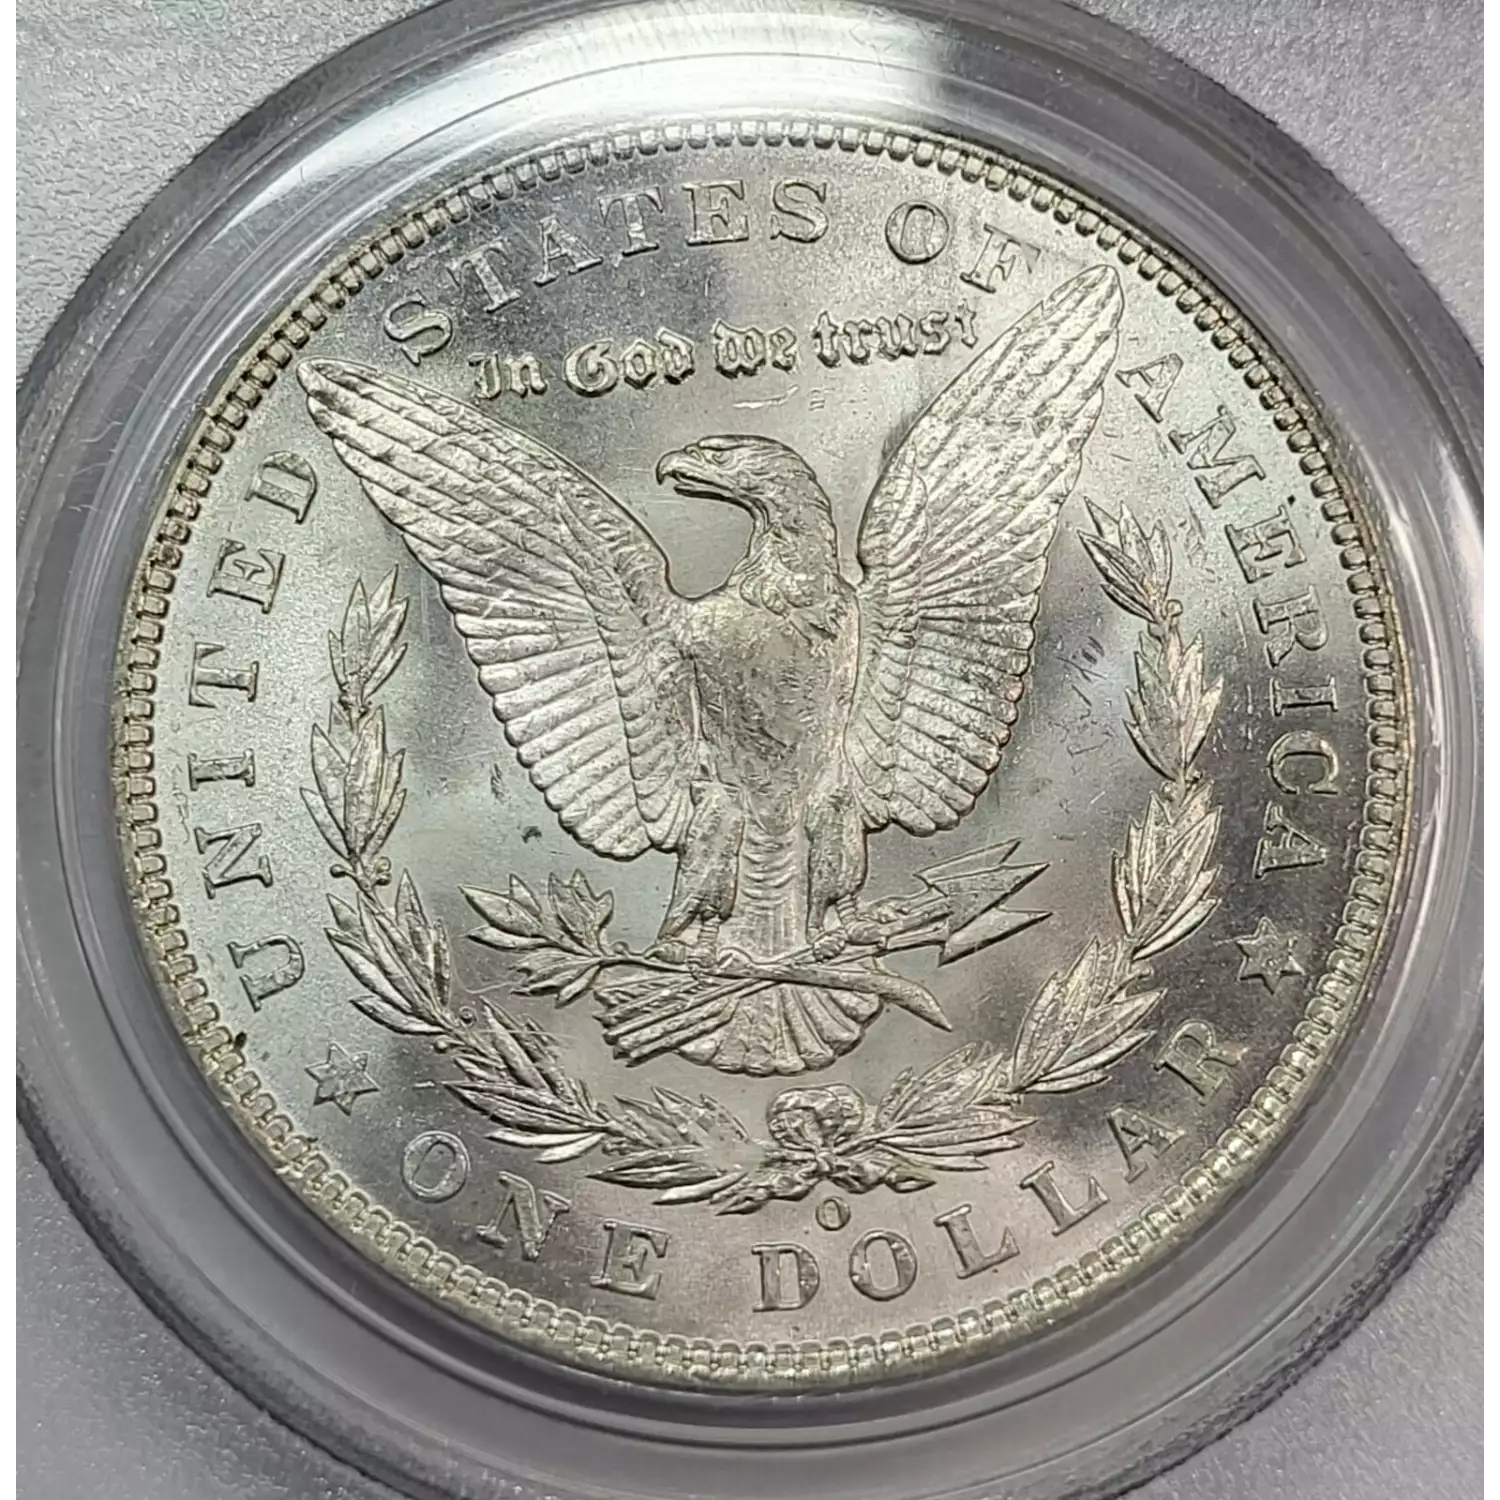 1904-O $1 (4)